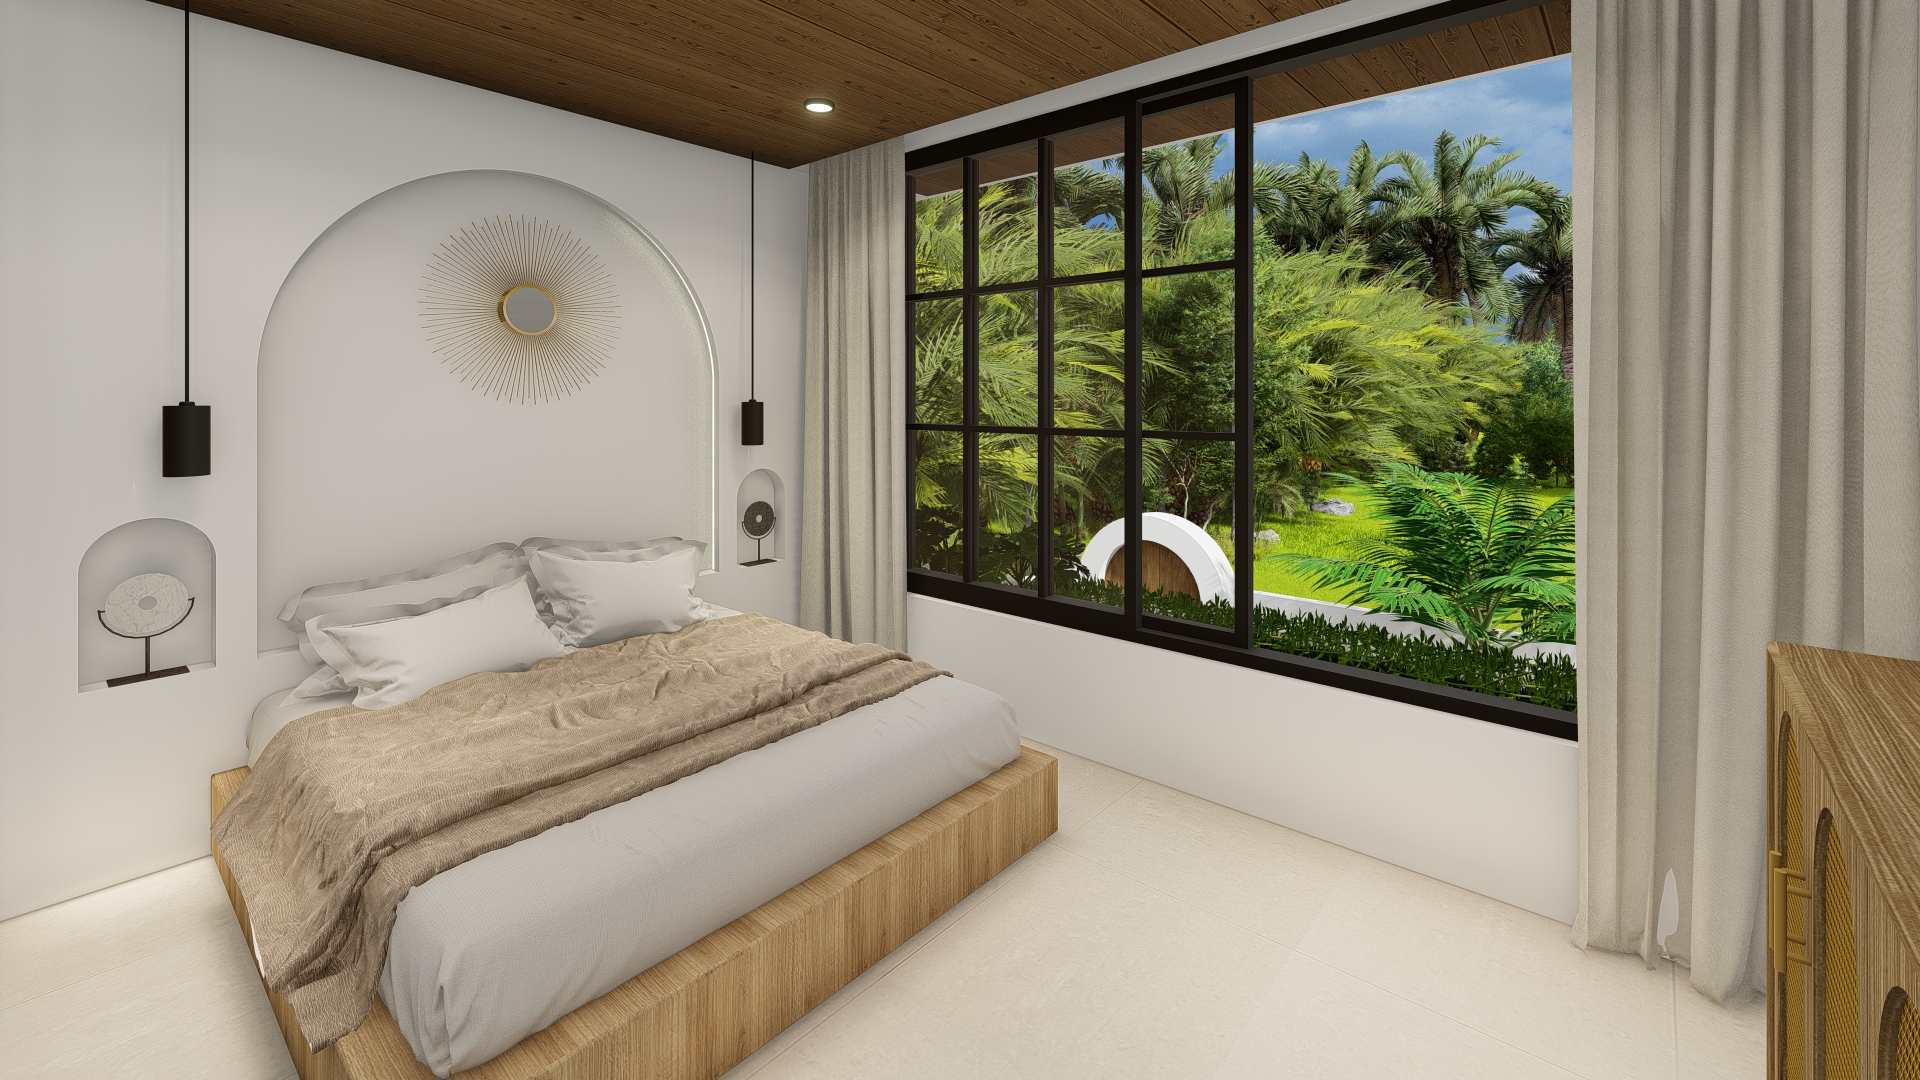 The Meridian 4 bedroom villas in Mediterranean style in Canggu Bali